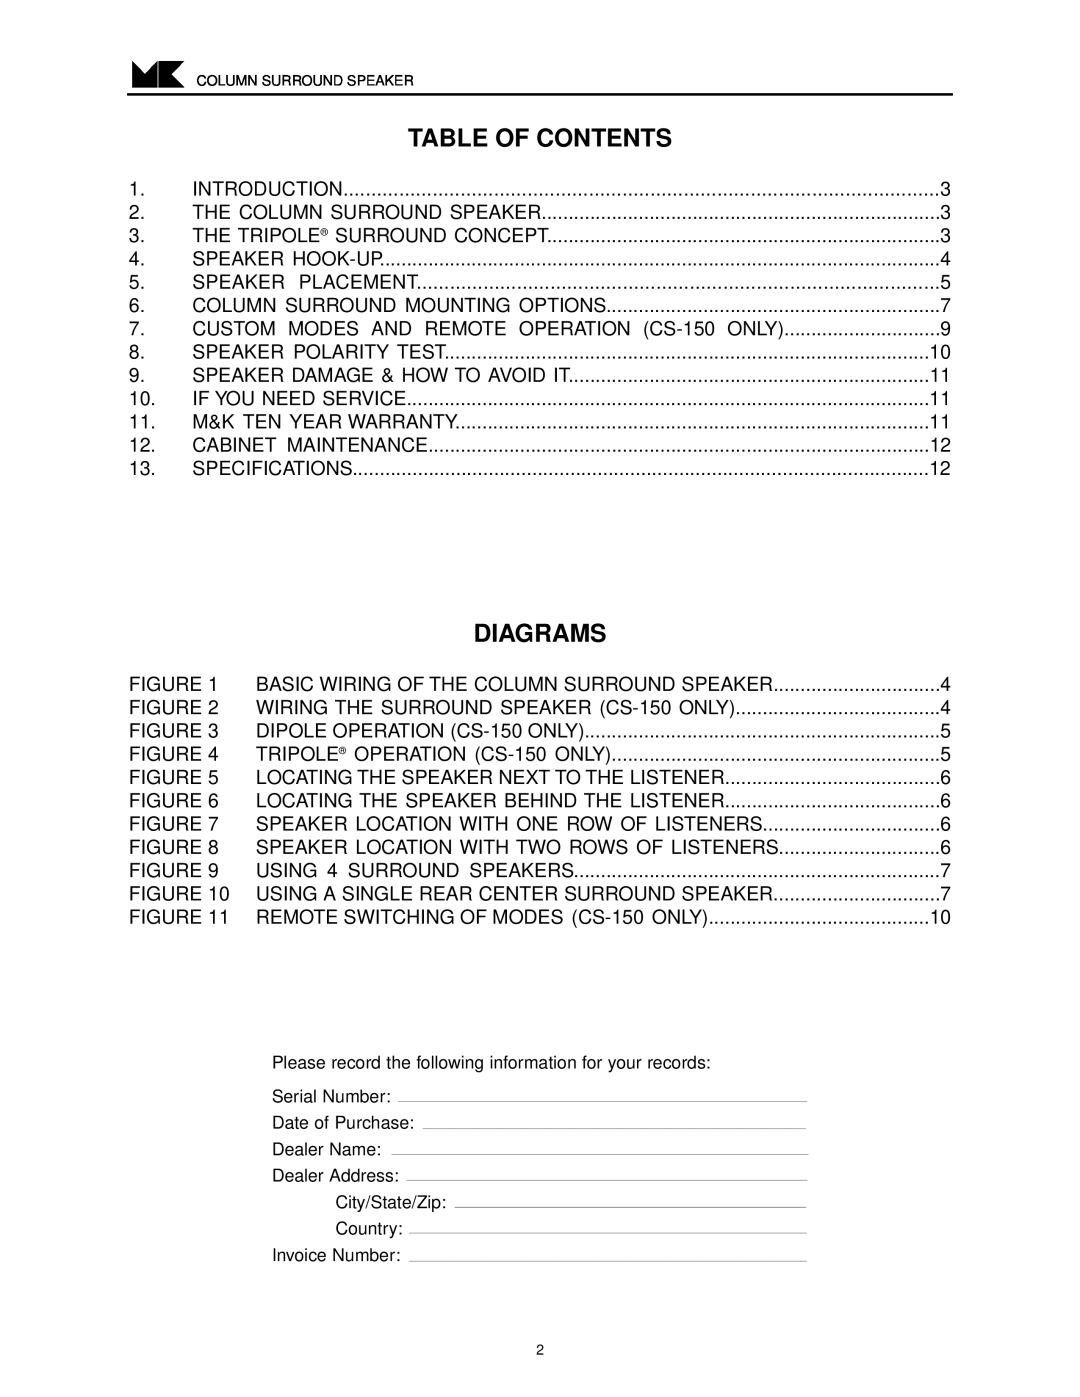 MK Sound CS-22, CS-35, CS-29, CS-150 operation manual Table Of Contents, Diagrams 